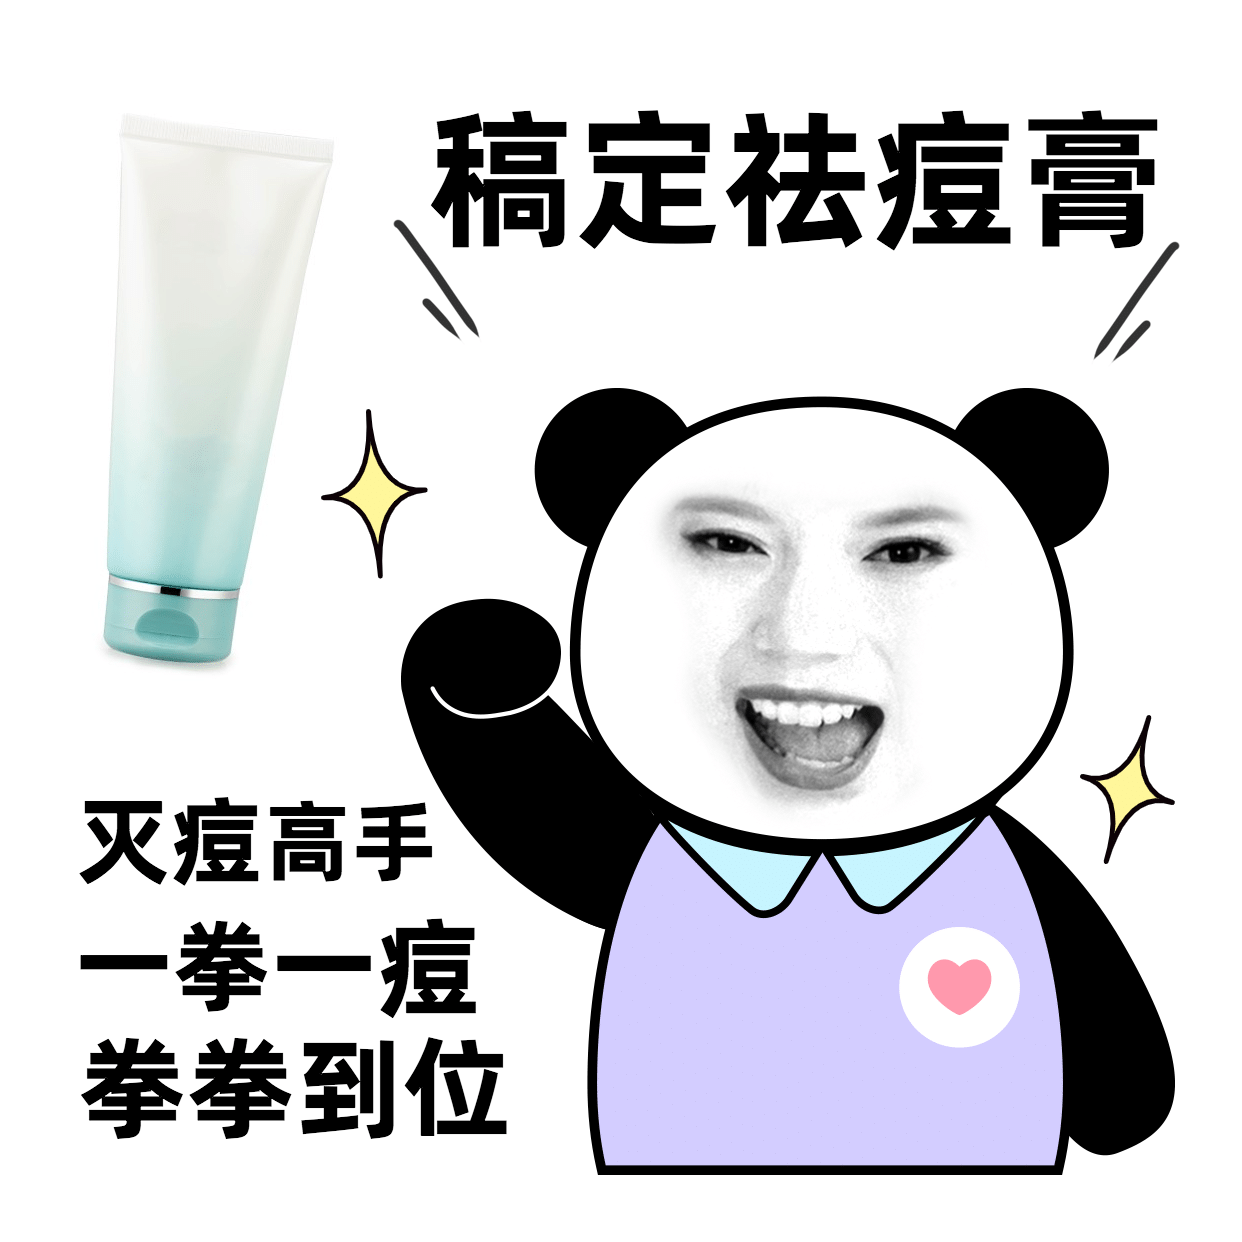 手绘熊猫人换脸营销表情包产品展示